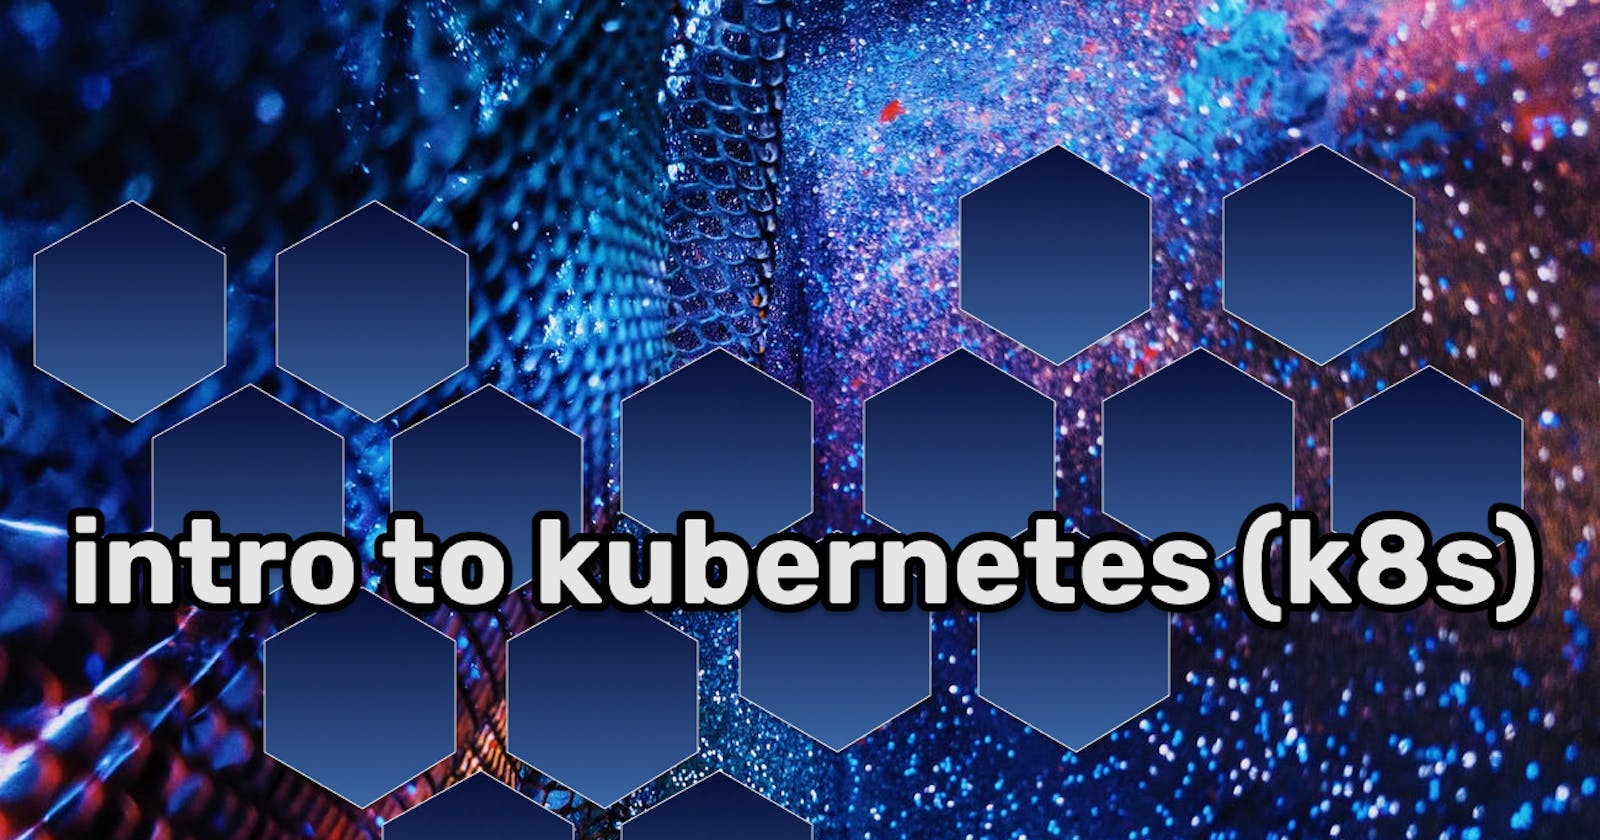 Intro to Kubernetes(k8s)